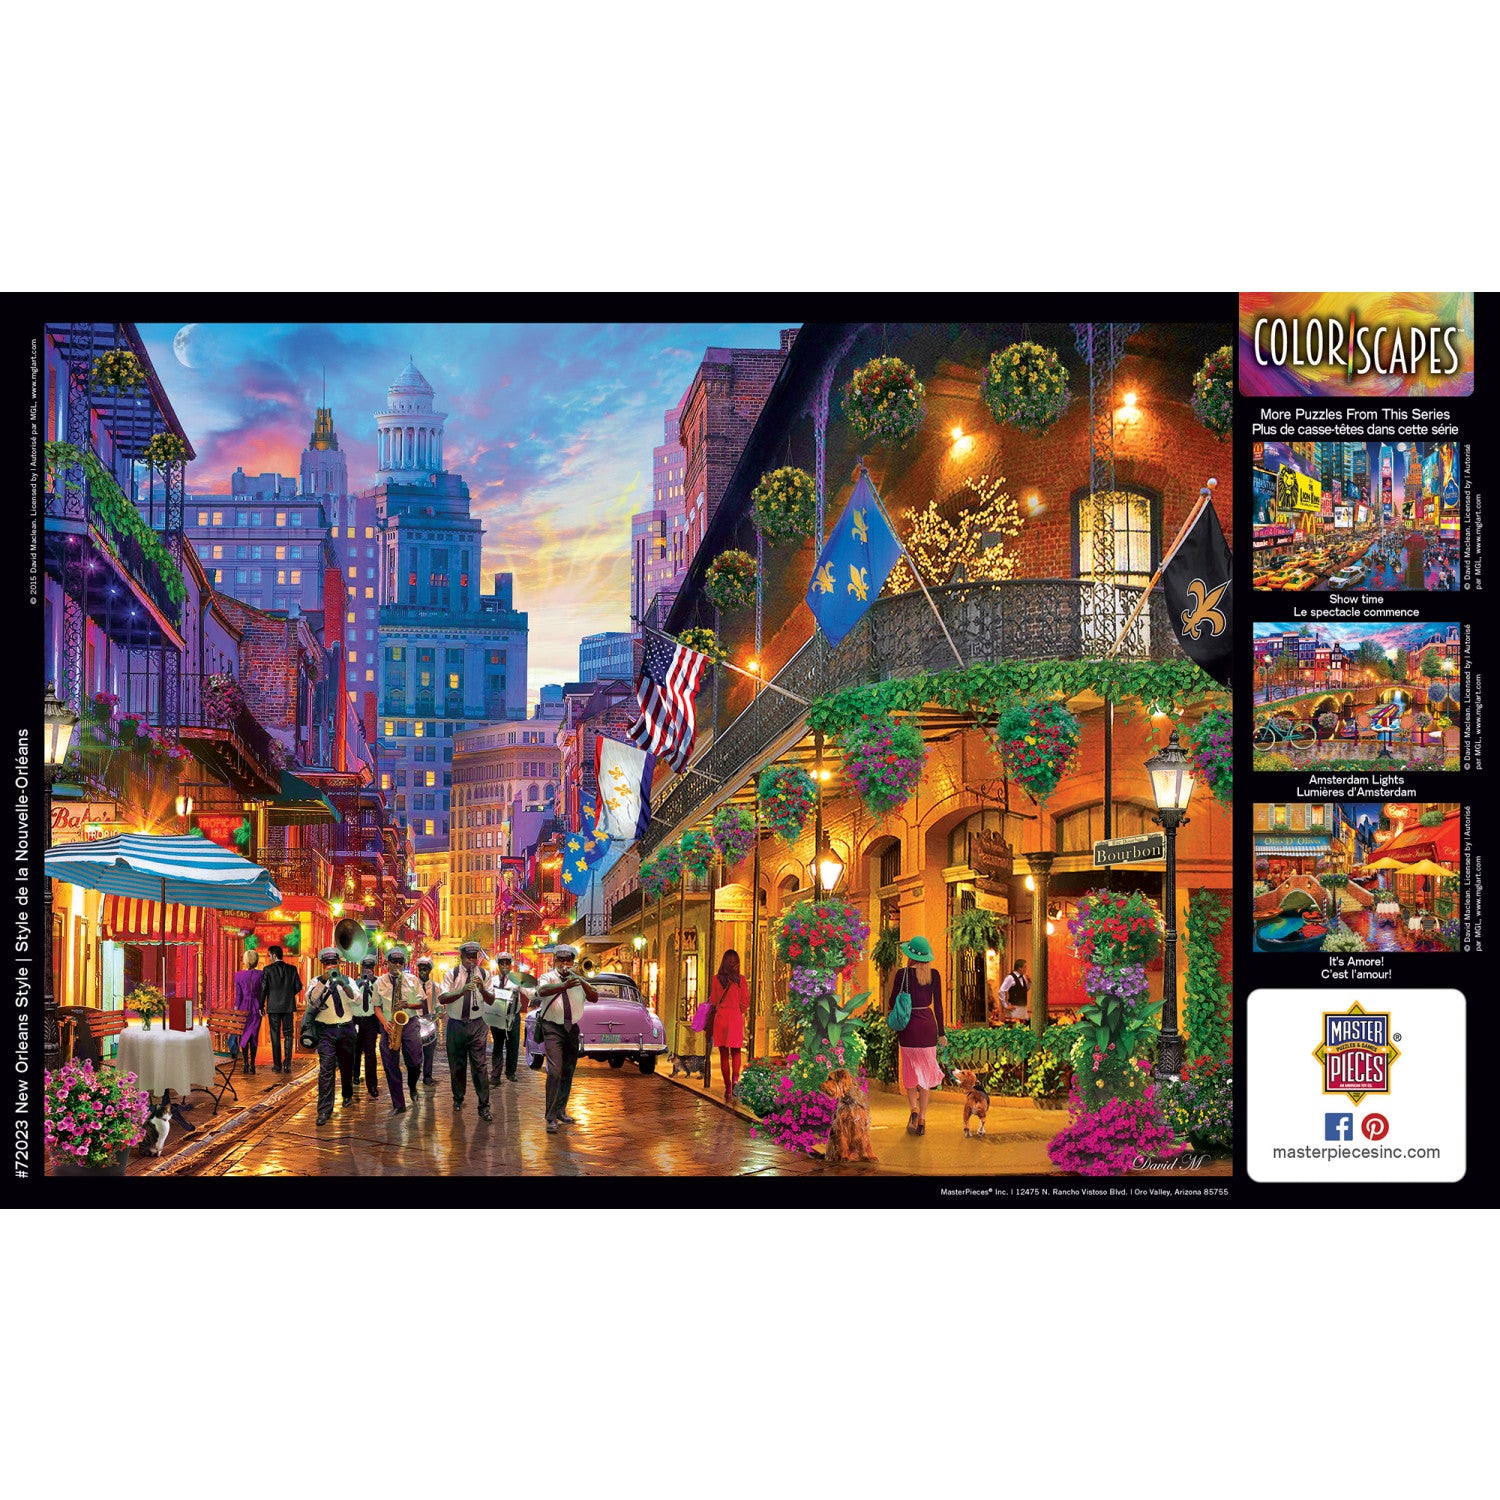 Colorscapes - New Orleans Style 1000 Piece Puzzle